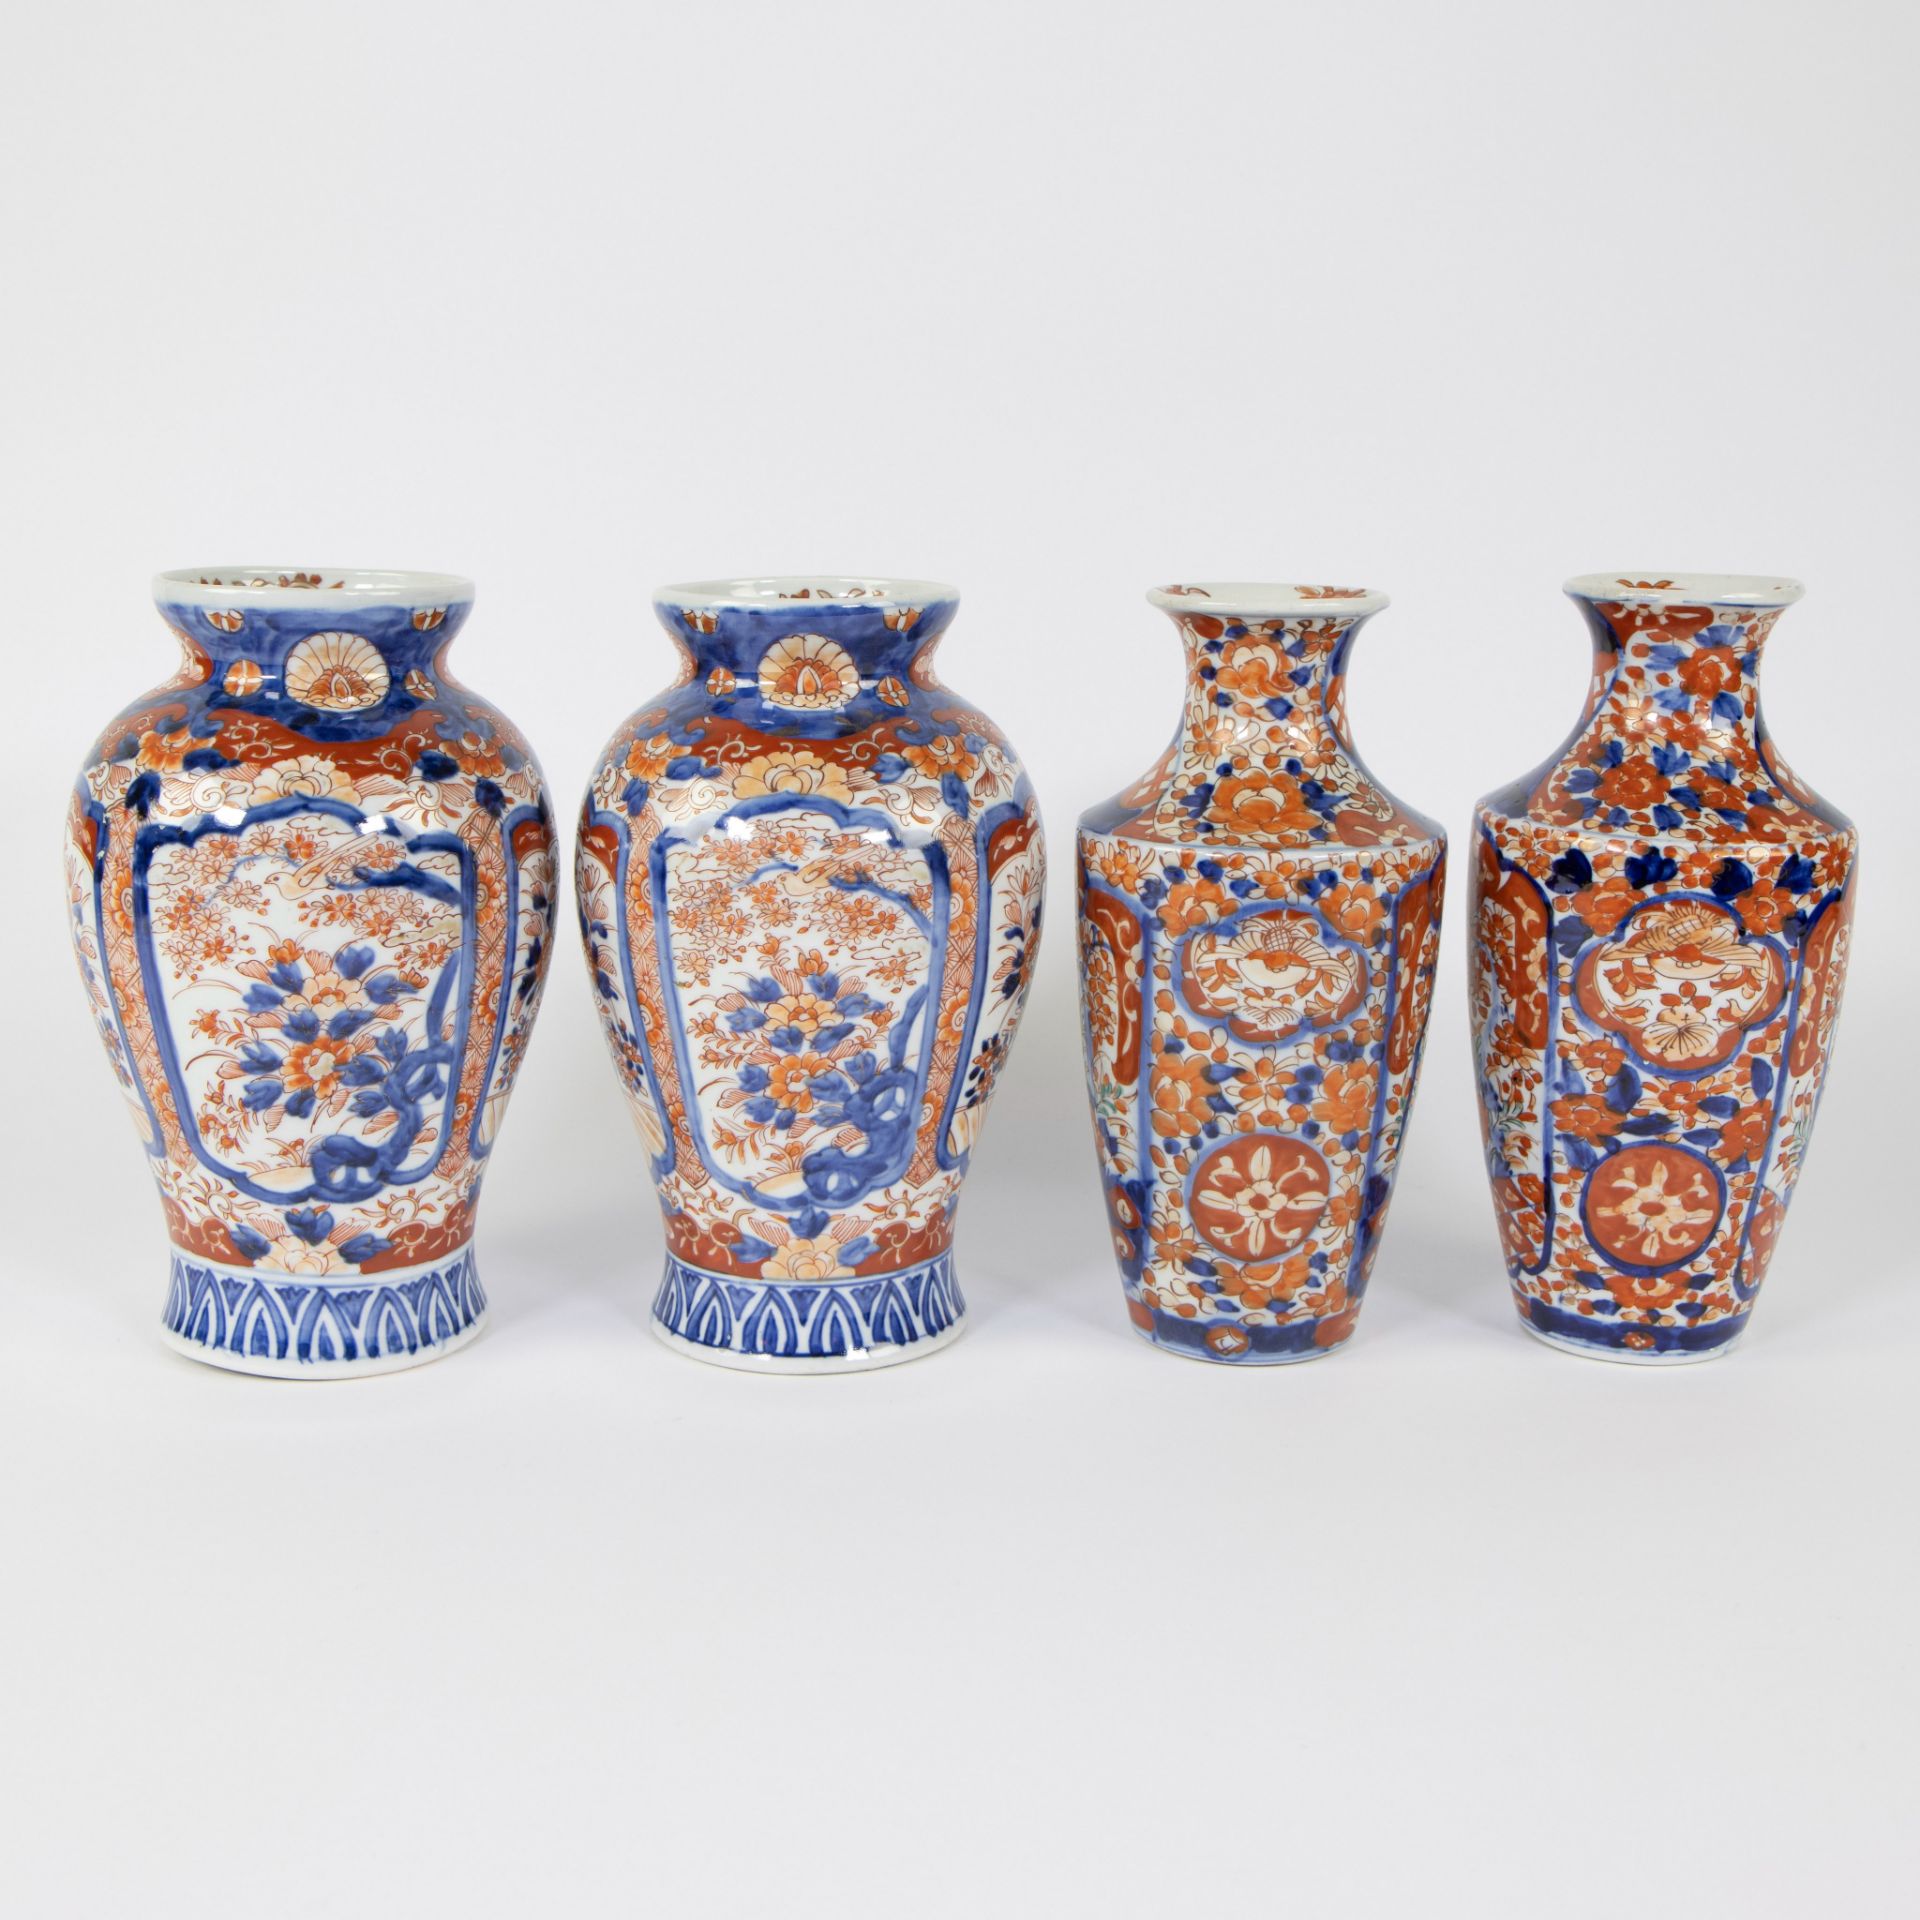 2 pairs of Japanese Imari vases, 19th century - Image 2 of 6